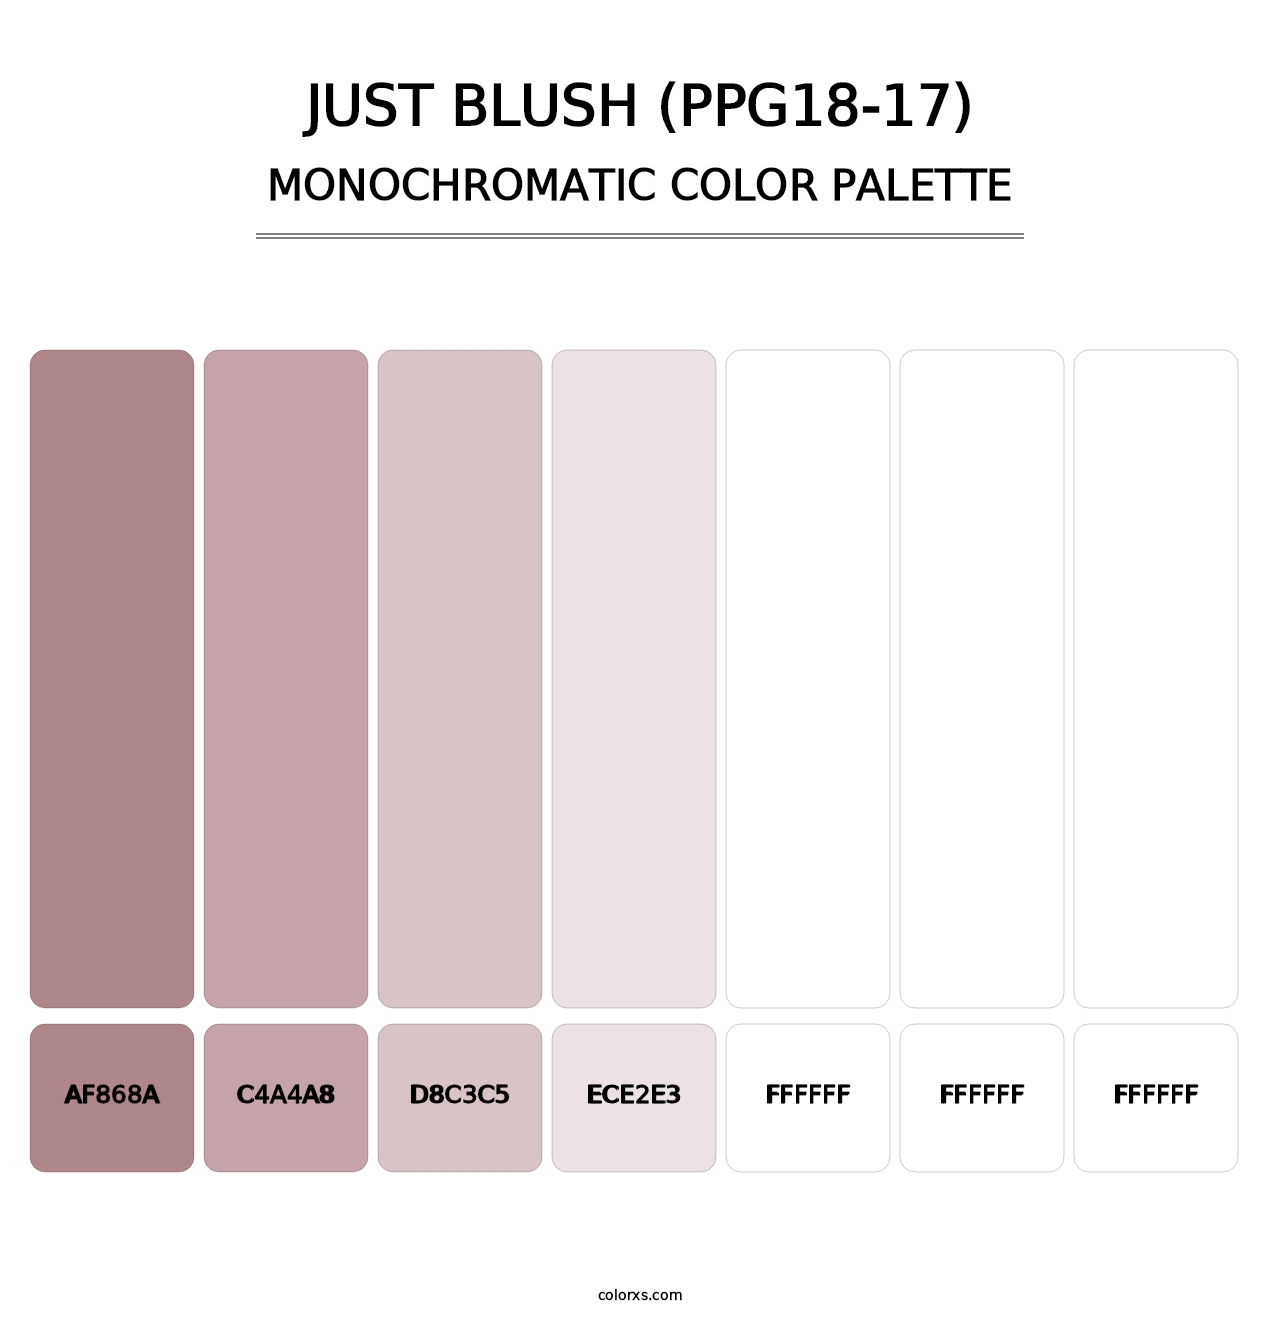 Just Blush (PPG18-17) - Monochromatic Color Palette